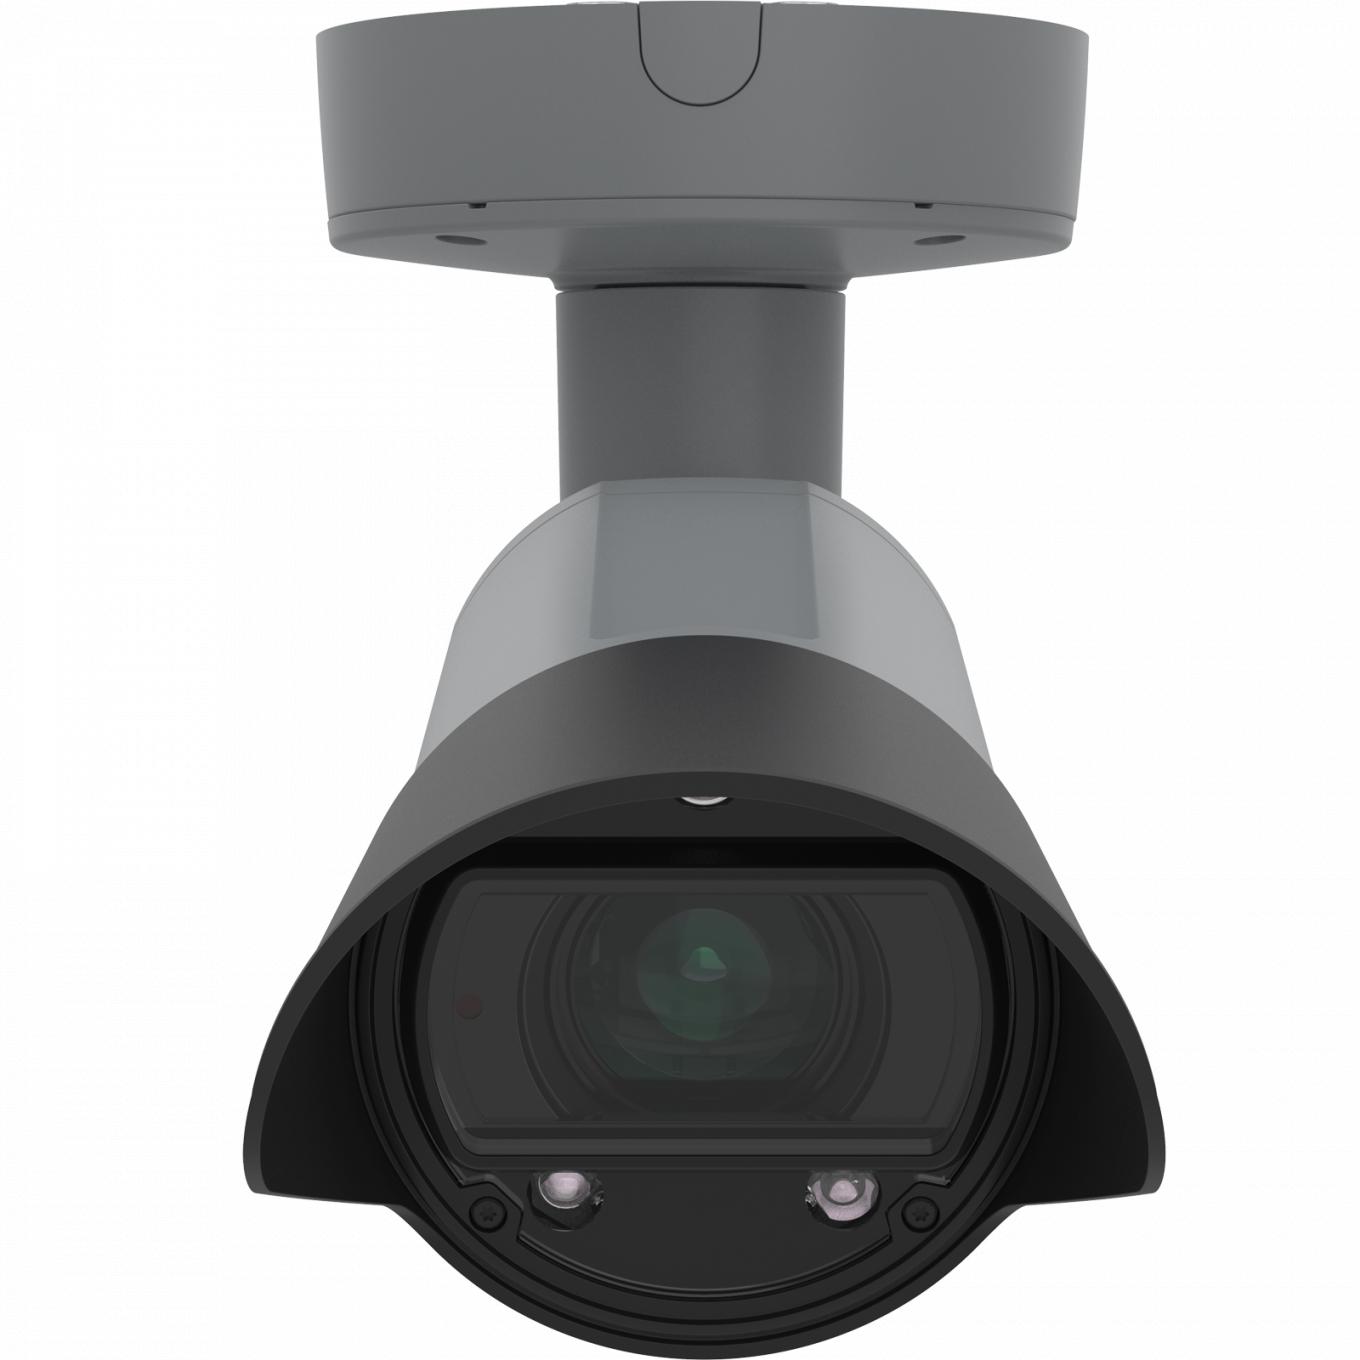 AXIS Q1700-LE License Plate Camera, montata a soffitto e vista dalla parte anteriore.